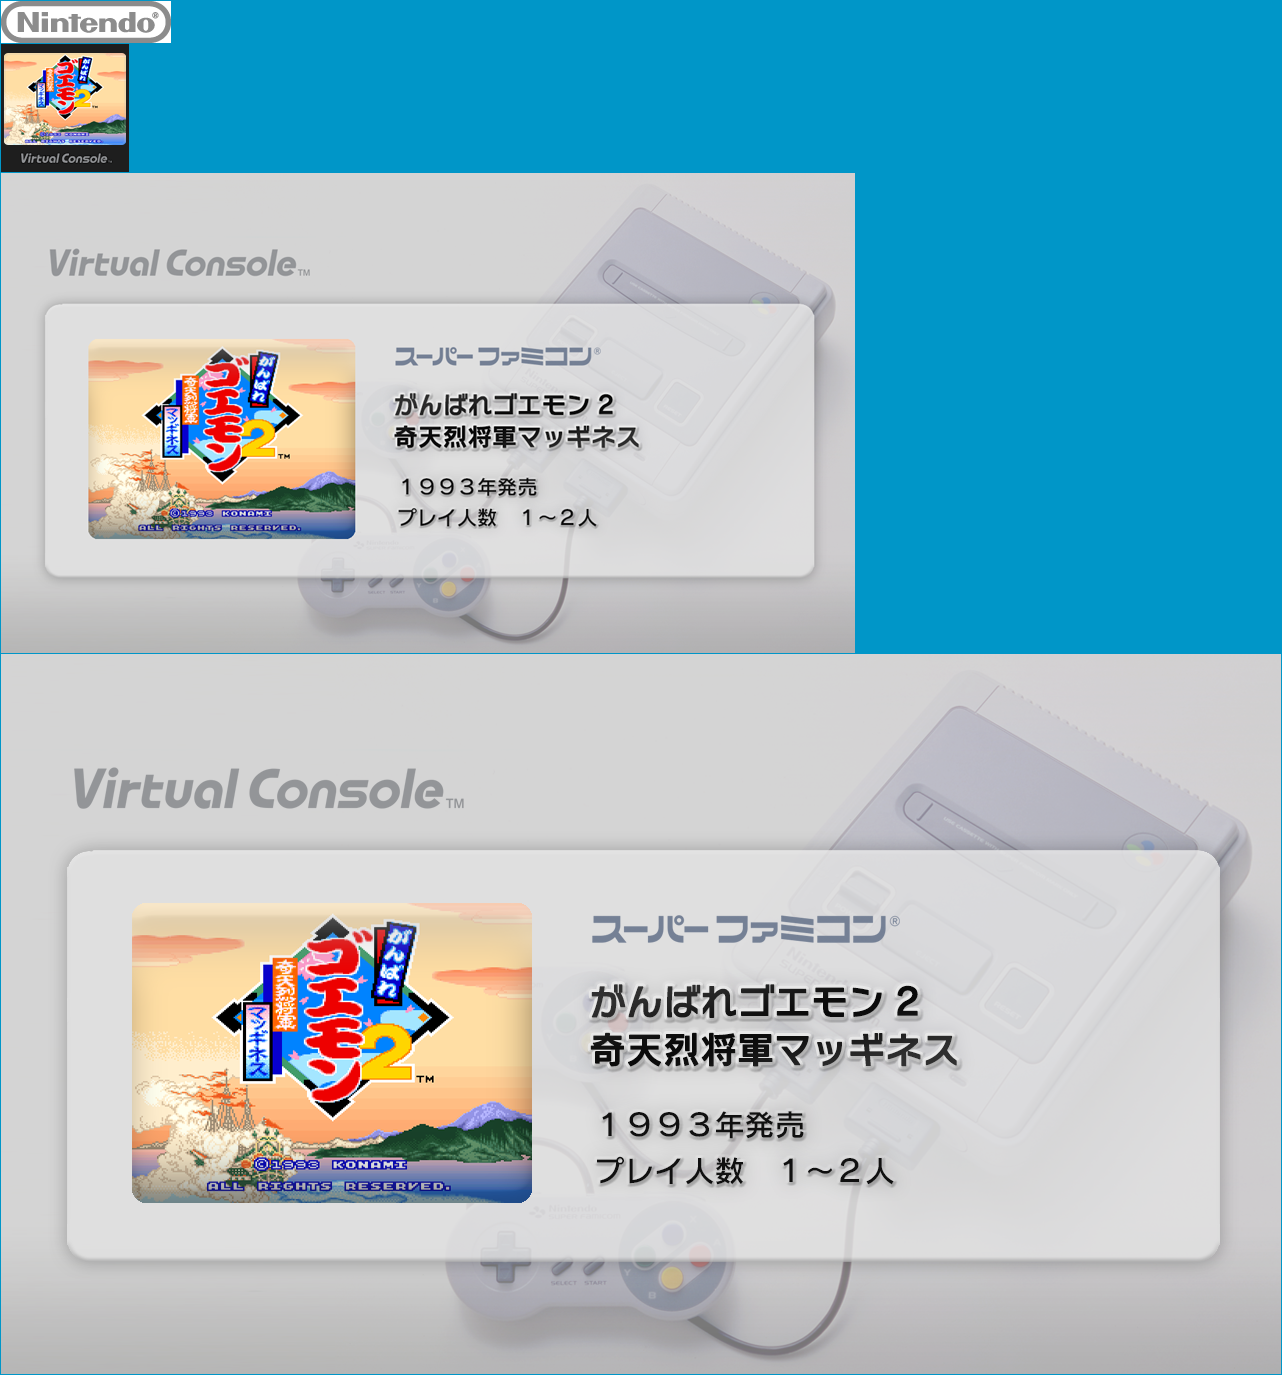 Virtual Console - Ganbare Goemon 2: Kiteretsu Shōgun Magginesu